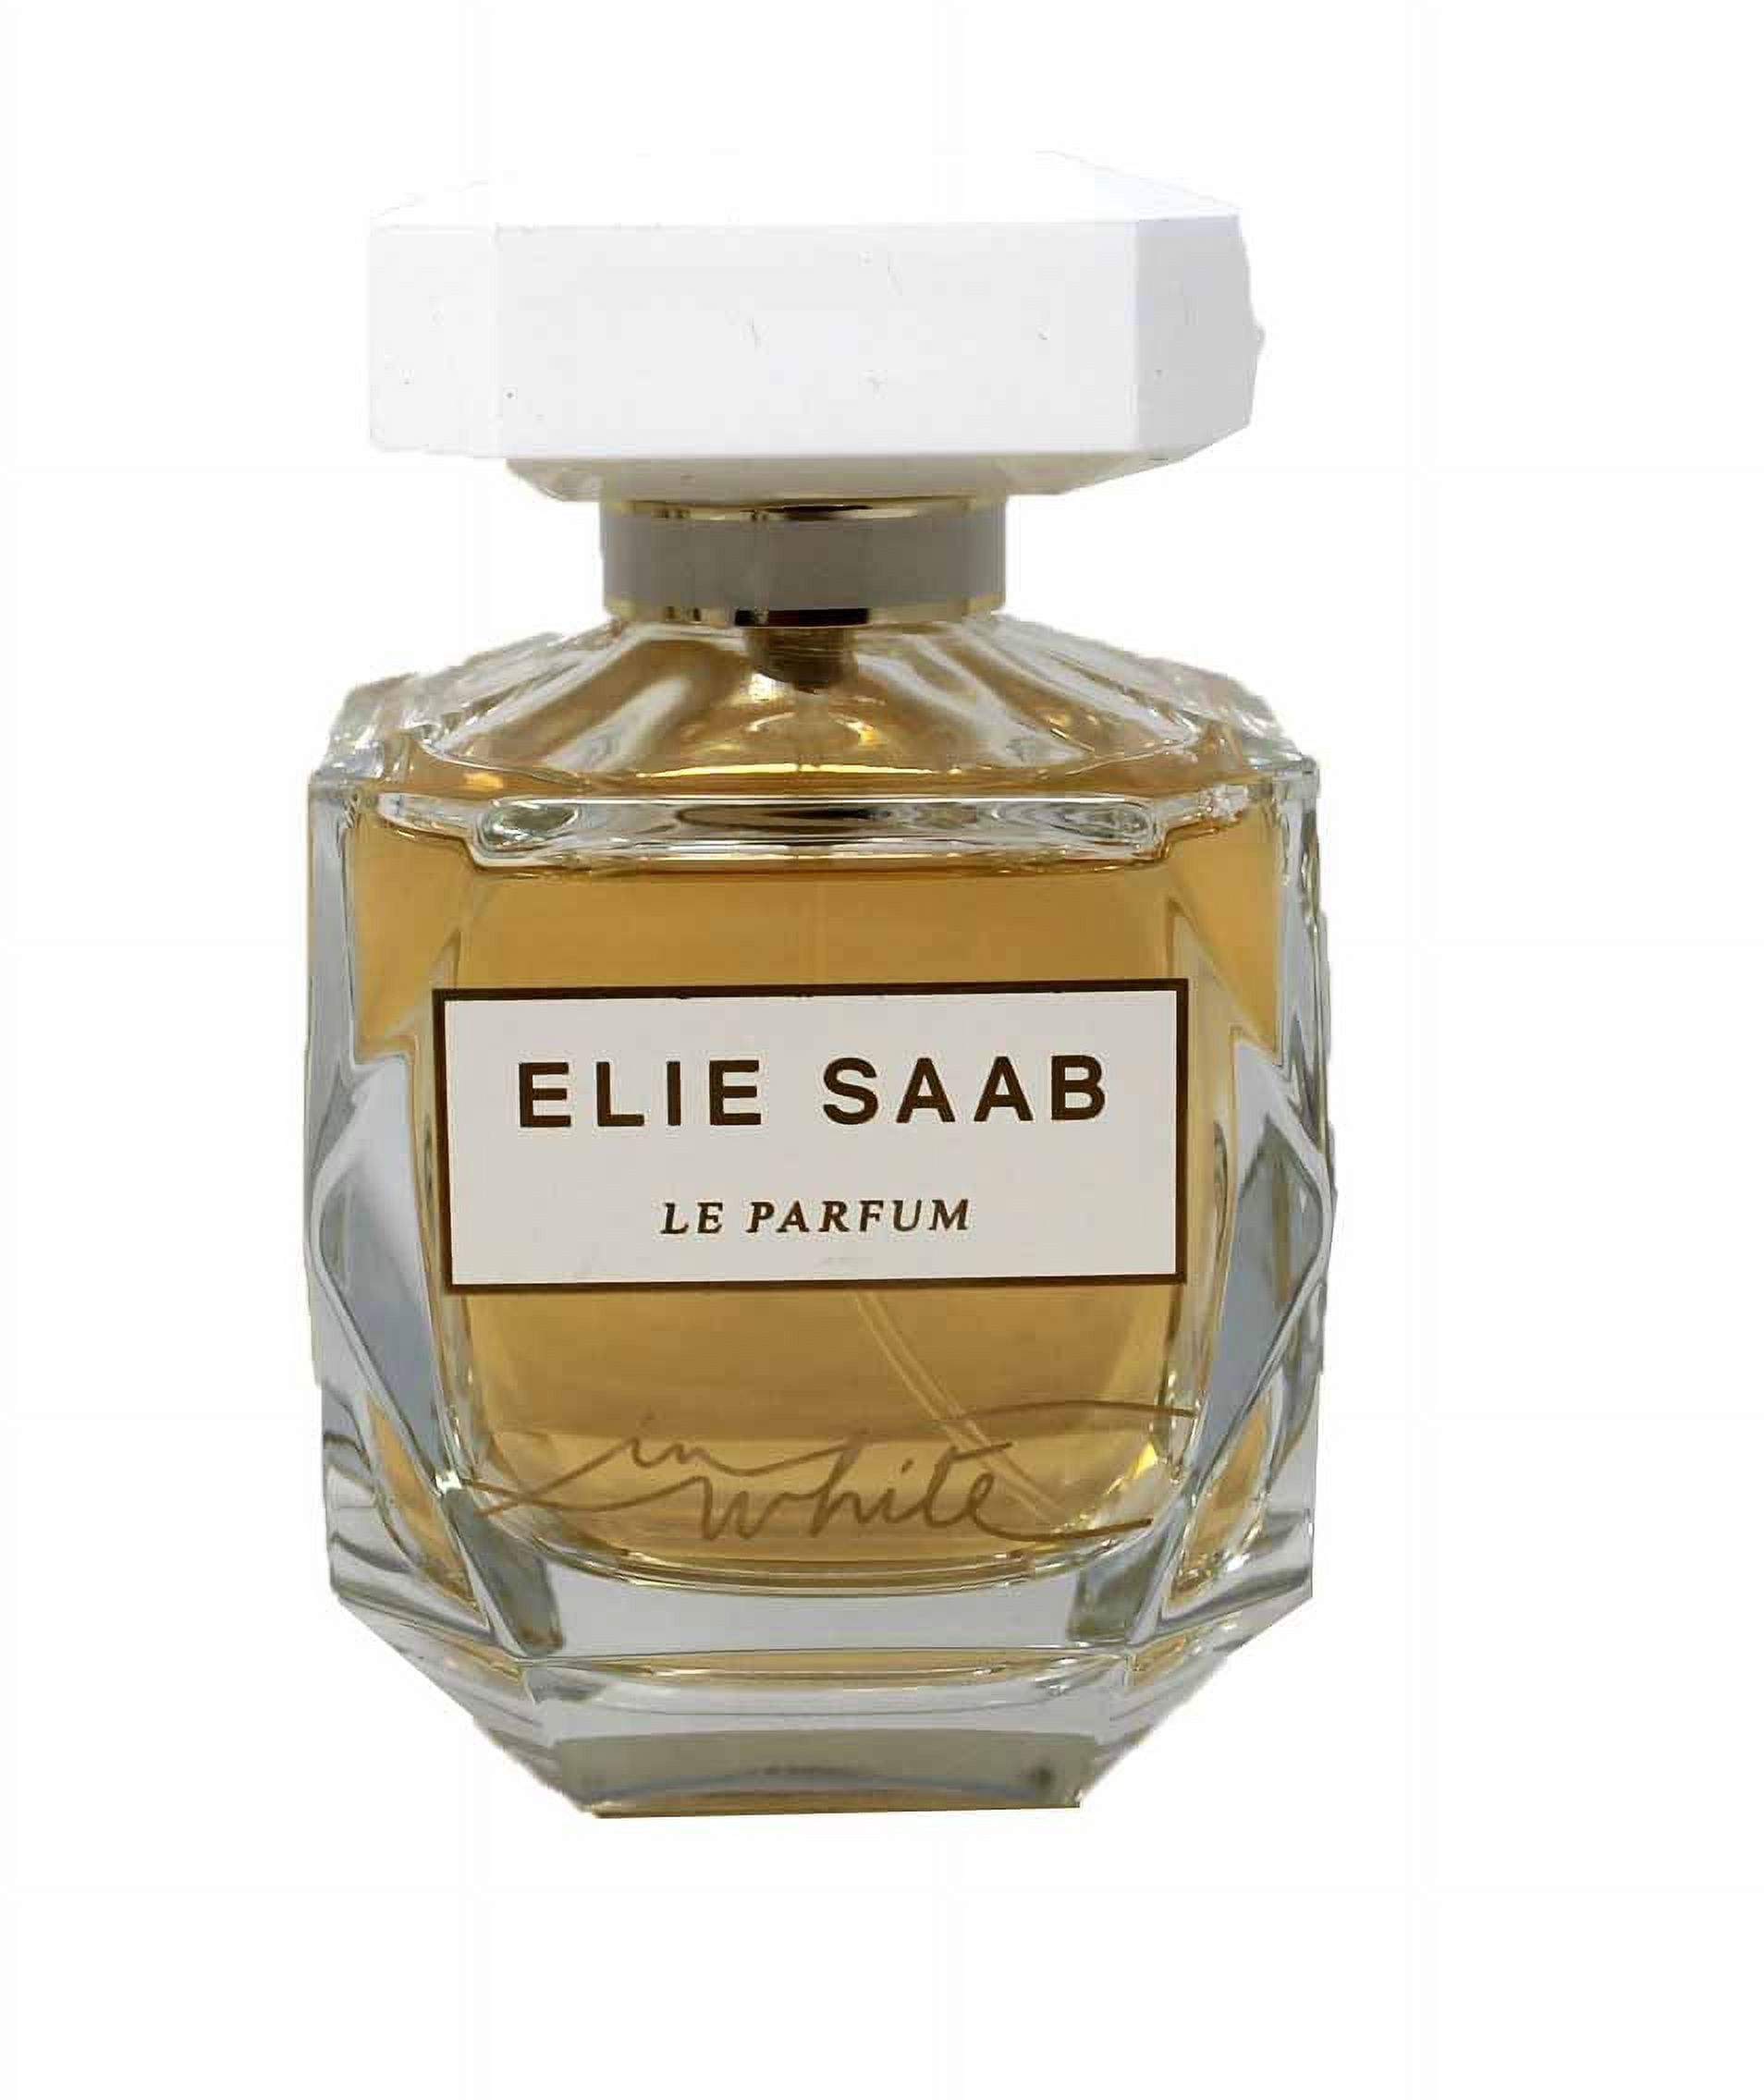 Elie Saab Perfume Price Top Sellers | website.jkuat.ac.ke